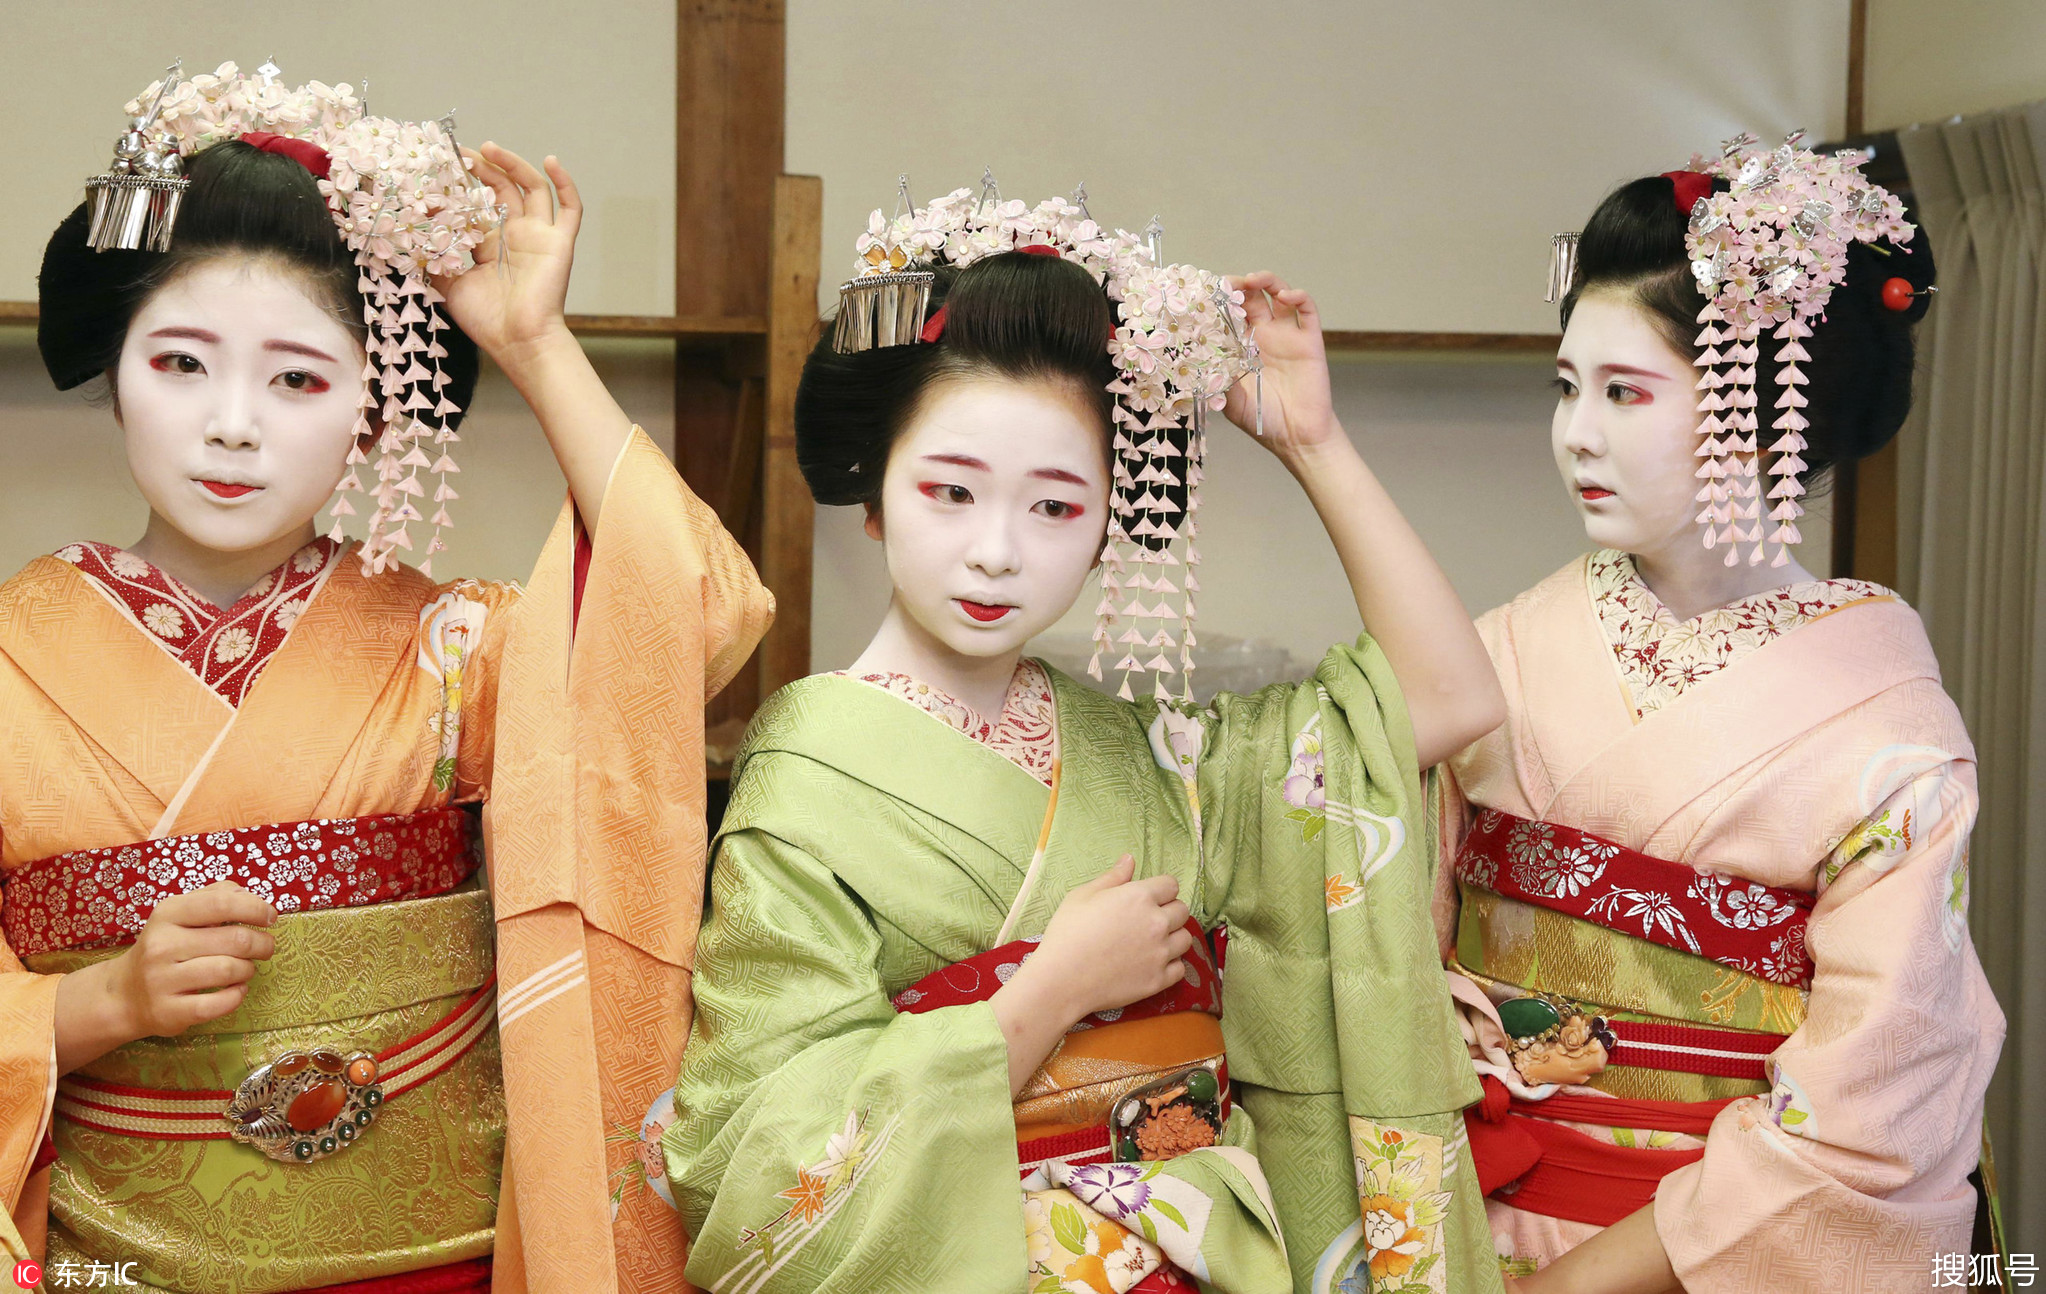 日本举办舞蹈表演迎初春 艺伎粉白黛黑别样之美